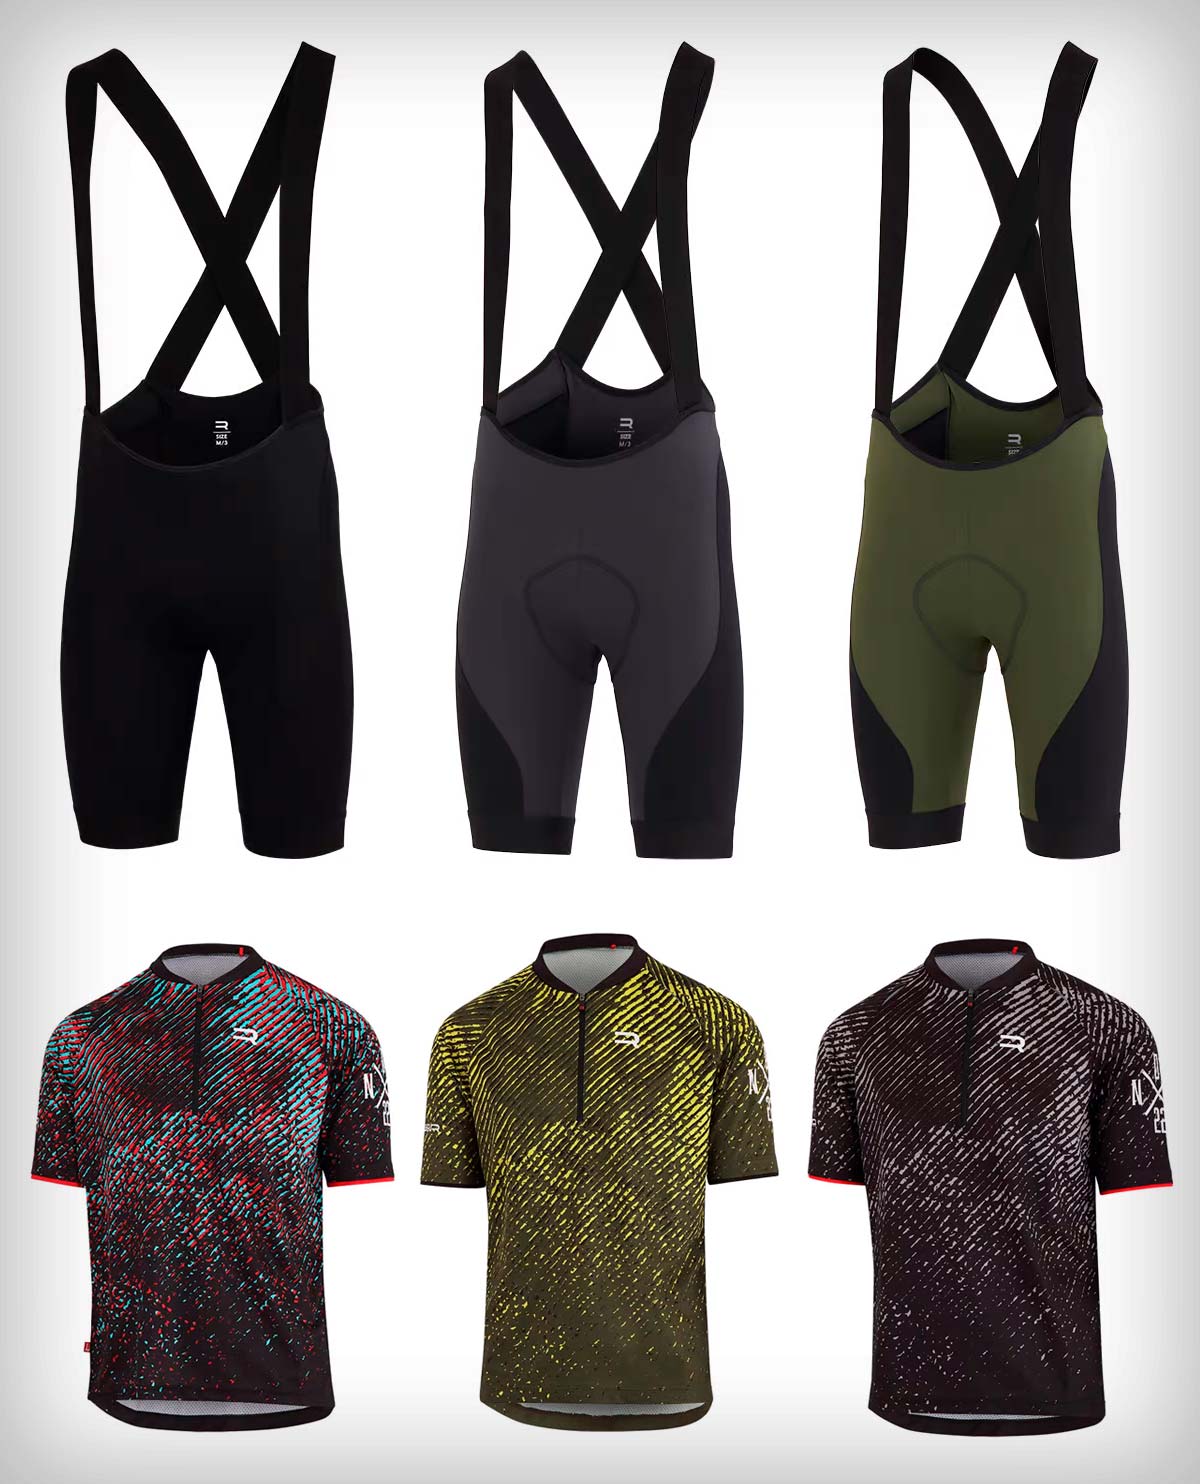 Finisseur presenta una línea de ropa específica para la práctica del Mountain Bike